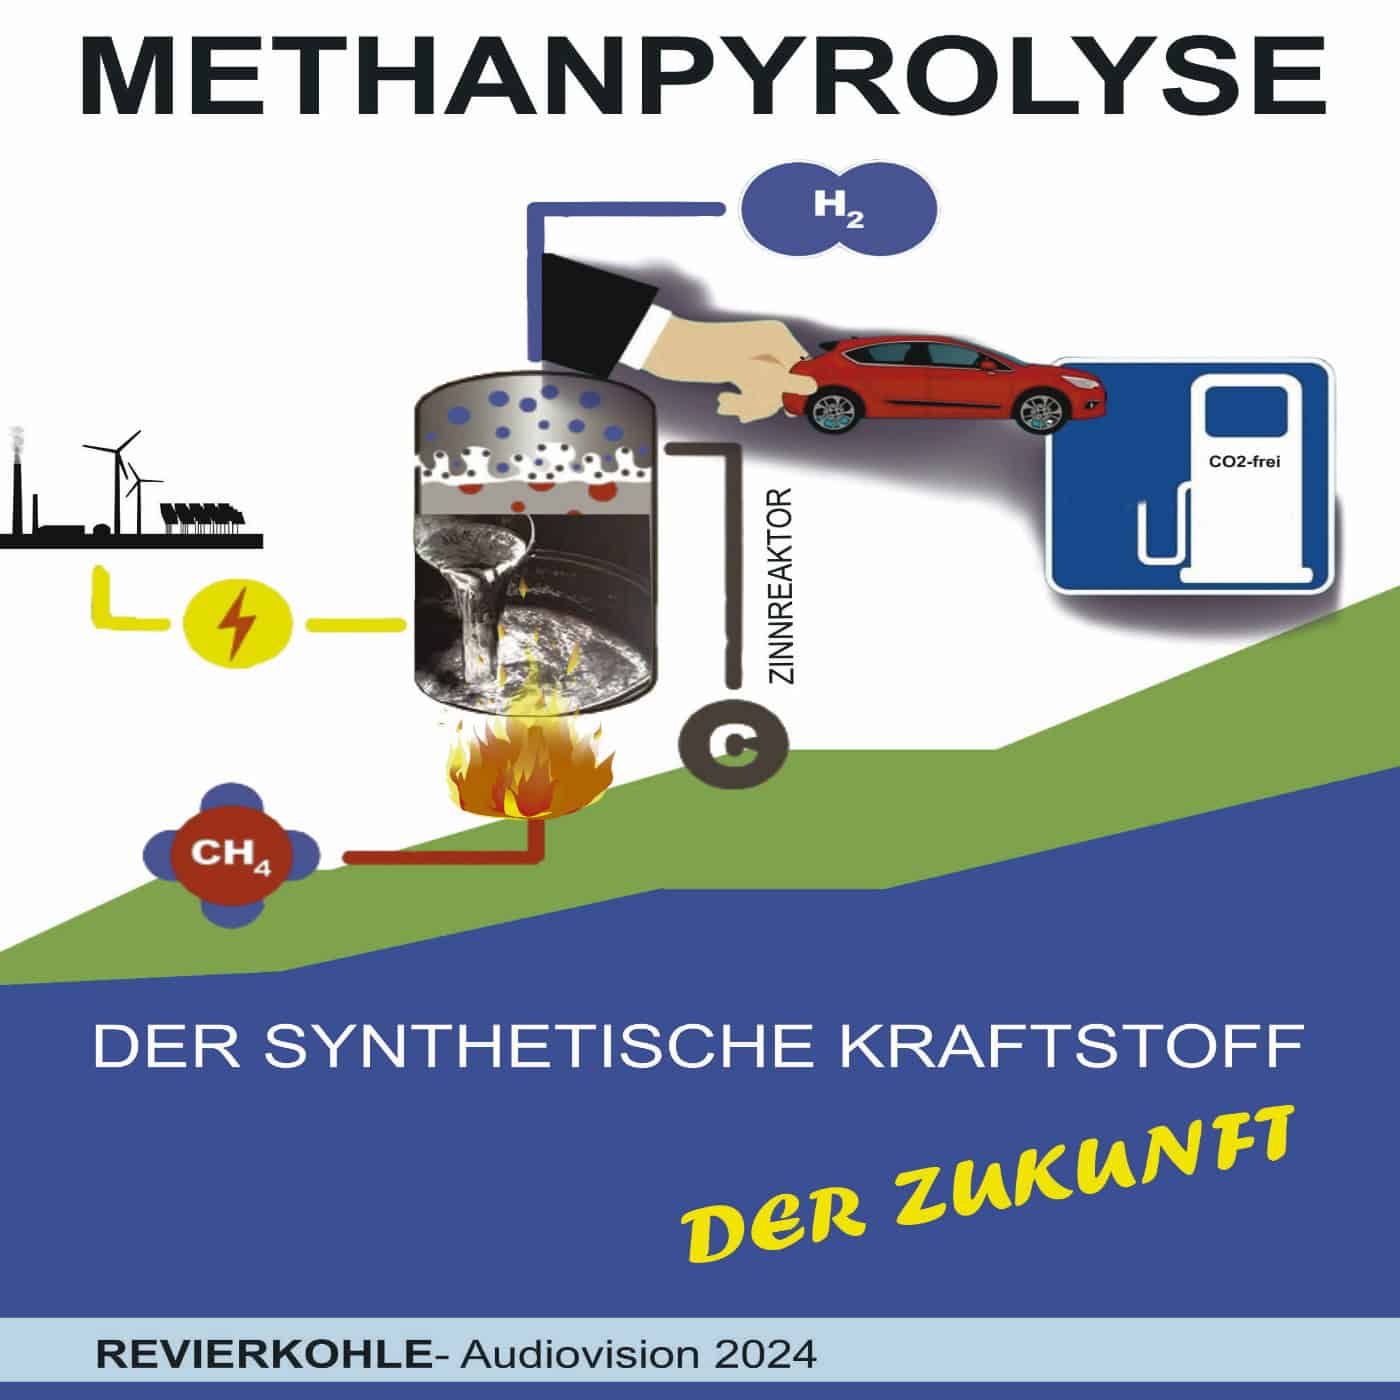 Methanpyrolyse - der synthetische Kraftstoff der Zukunft 